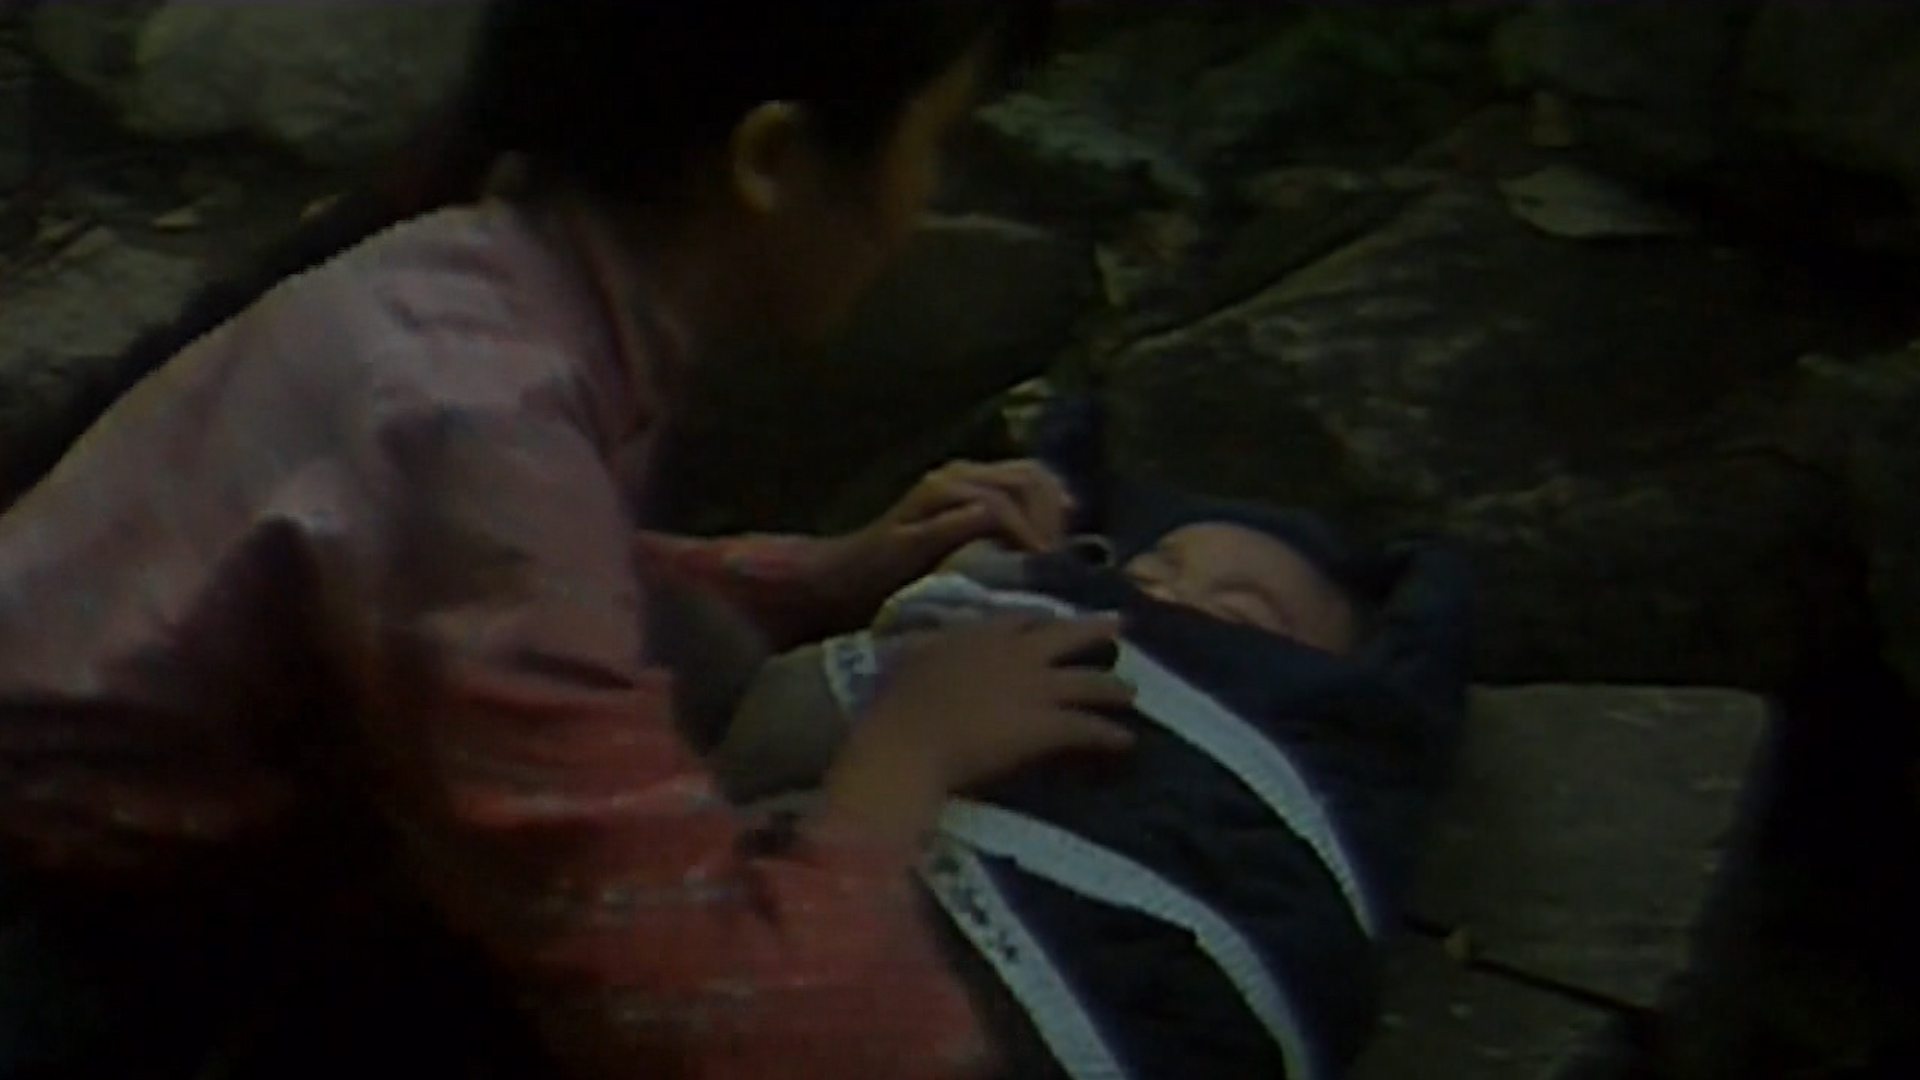 中国大妈捡到日本弃婴,顶着全村压力,把他当亲孙子养,催泪战争片